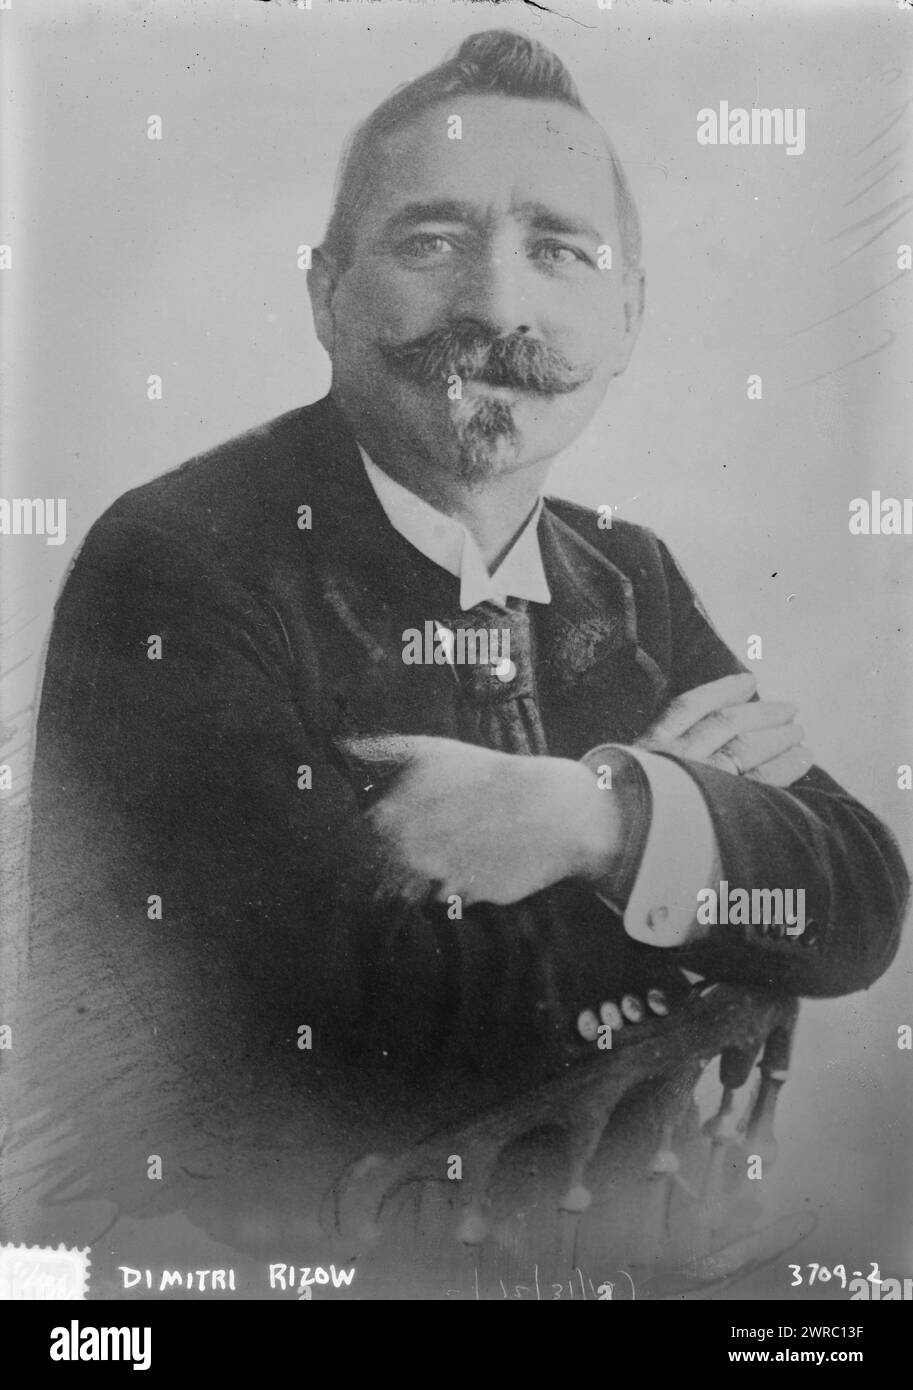 Dimitri Rizow, photographie montre le révolutionnaire bulgare, politicien et diplomate Dimitri Rizow, également connu sous le nom de Dimitar Hristov Rizov ou Rizoff (1862-1918)., 1915 Dec. 31, négatifs en verre, 1 négatif : verre Banque D'Images